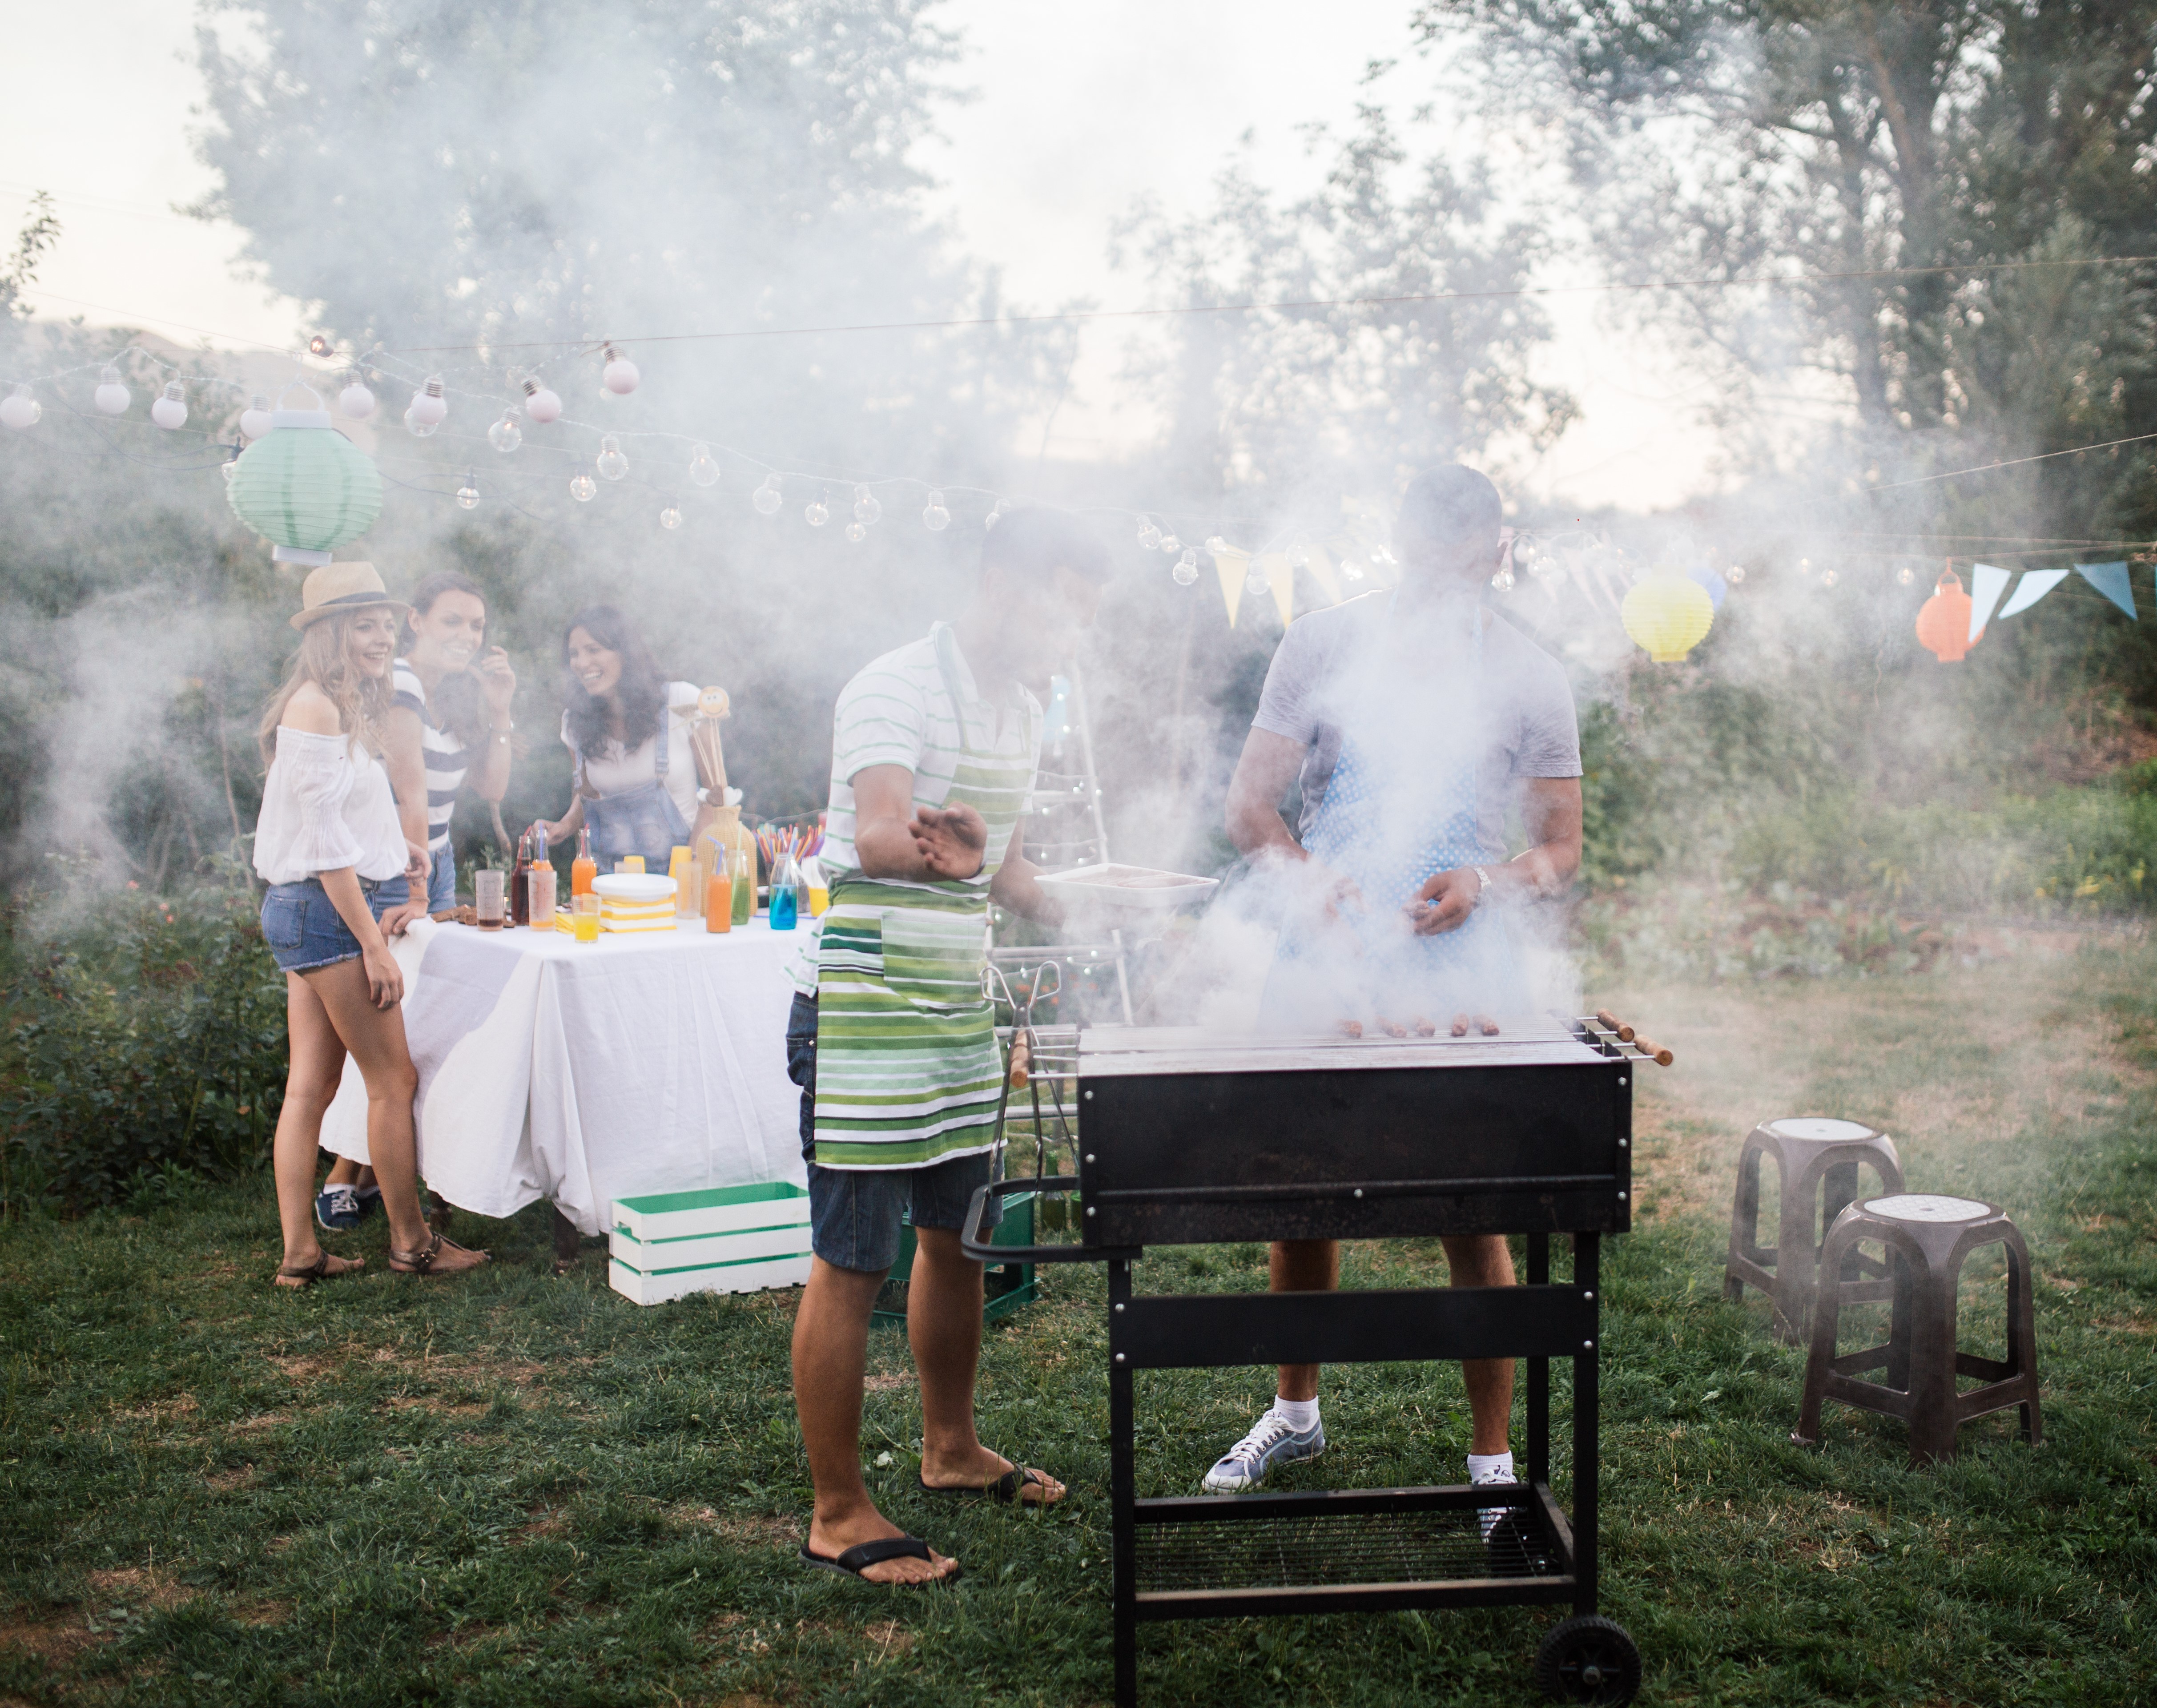 mensen bij een barbecue met veel rook